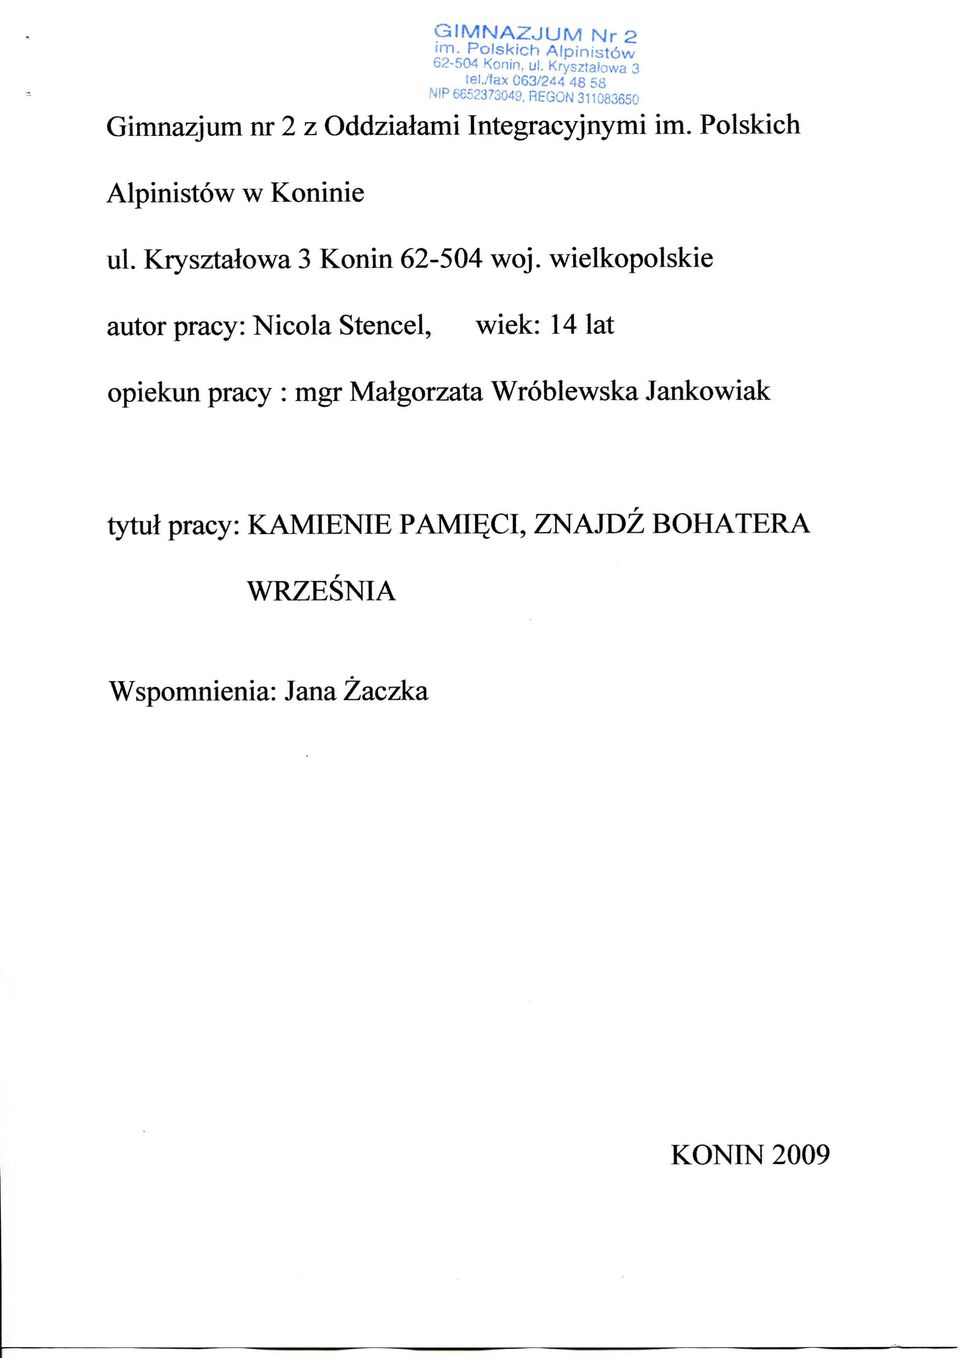 Polskich Alpinistow w Koninie ul. Krysztalowa 3 Konin 62-504 woj.